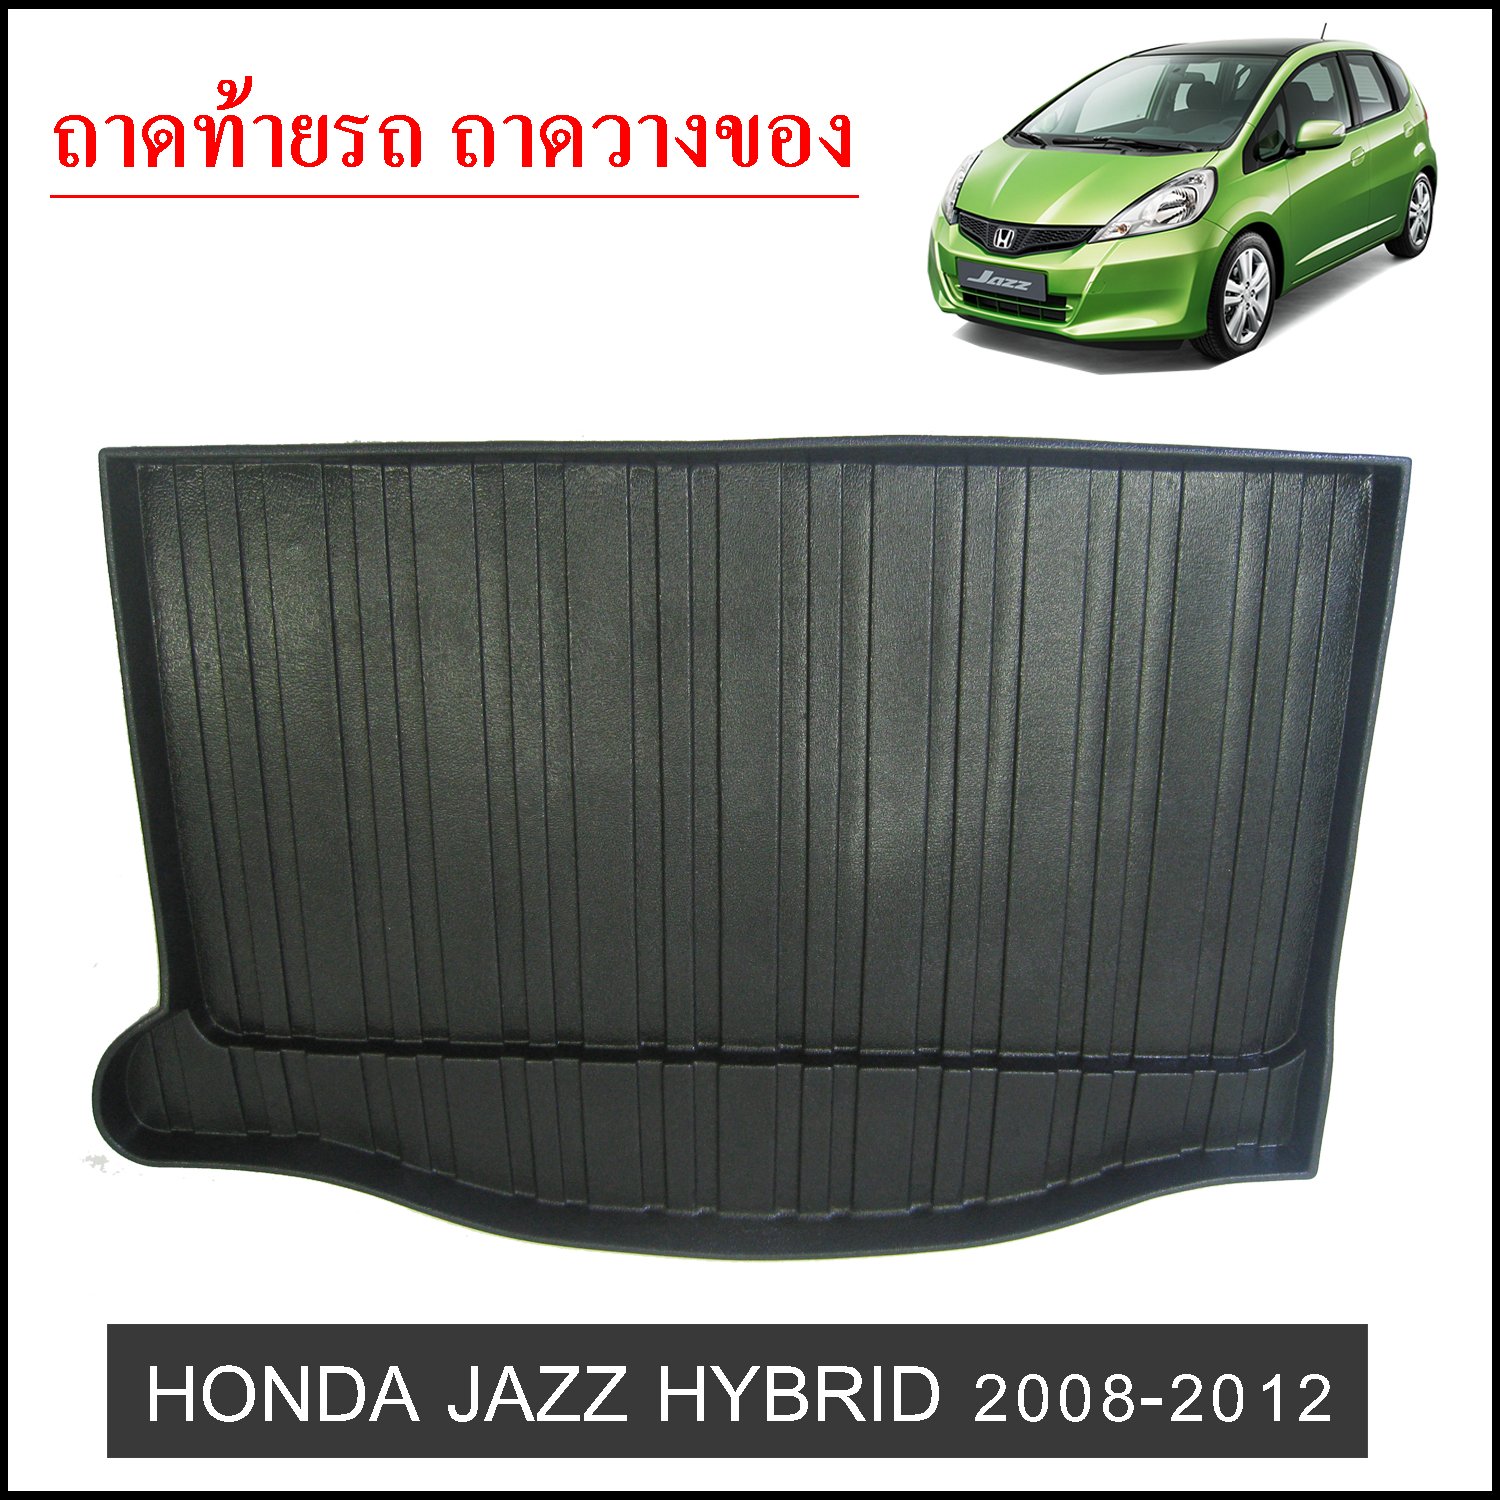 Honda Jazz 2008-2012 HYBRID